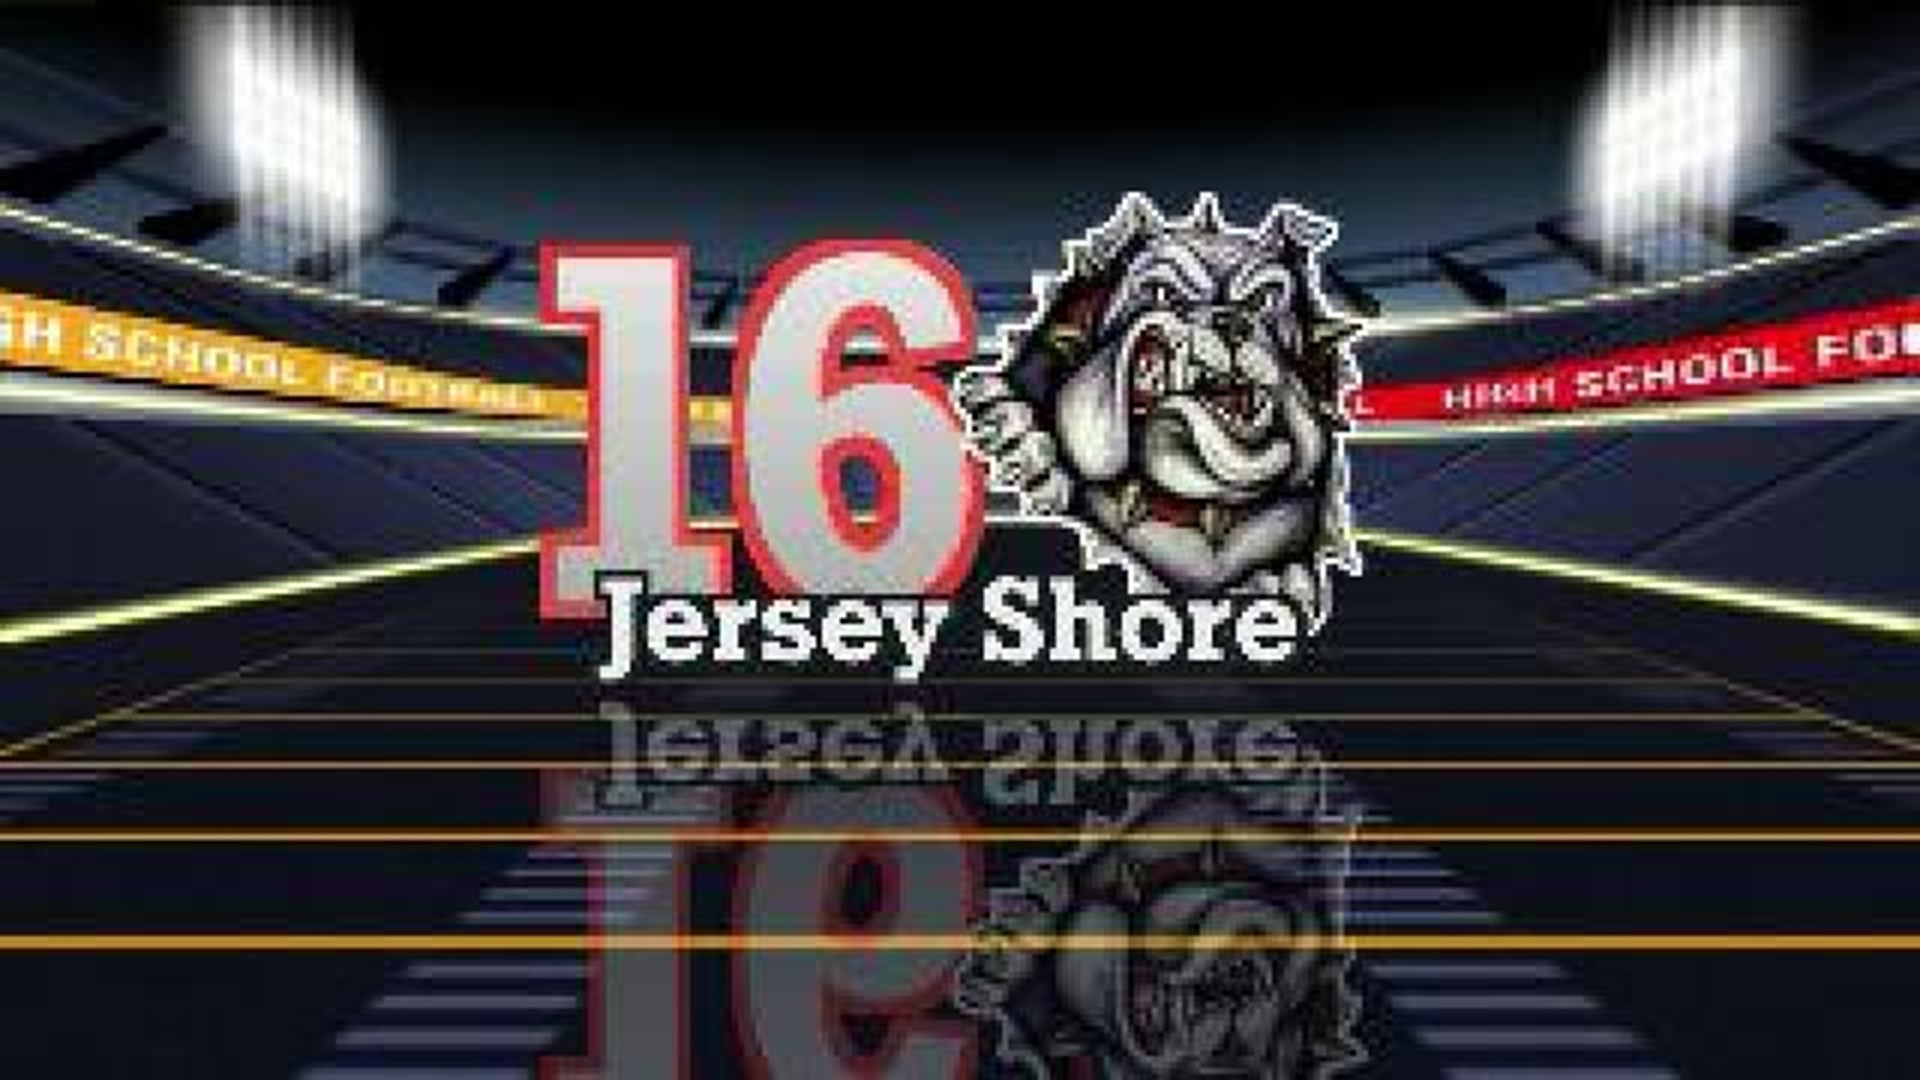 Jersey Shore team #16